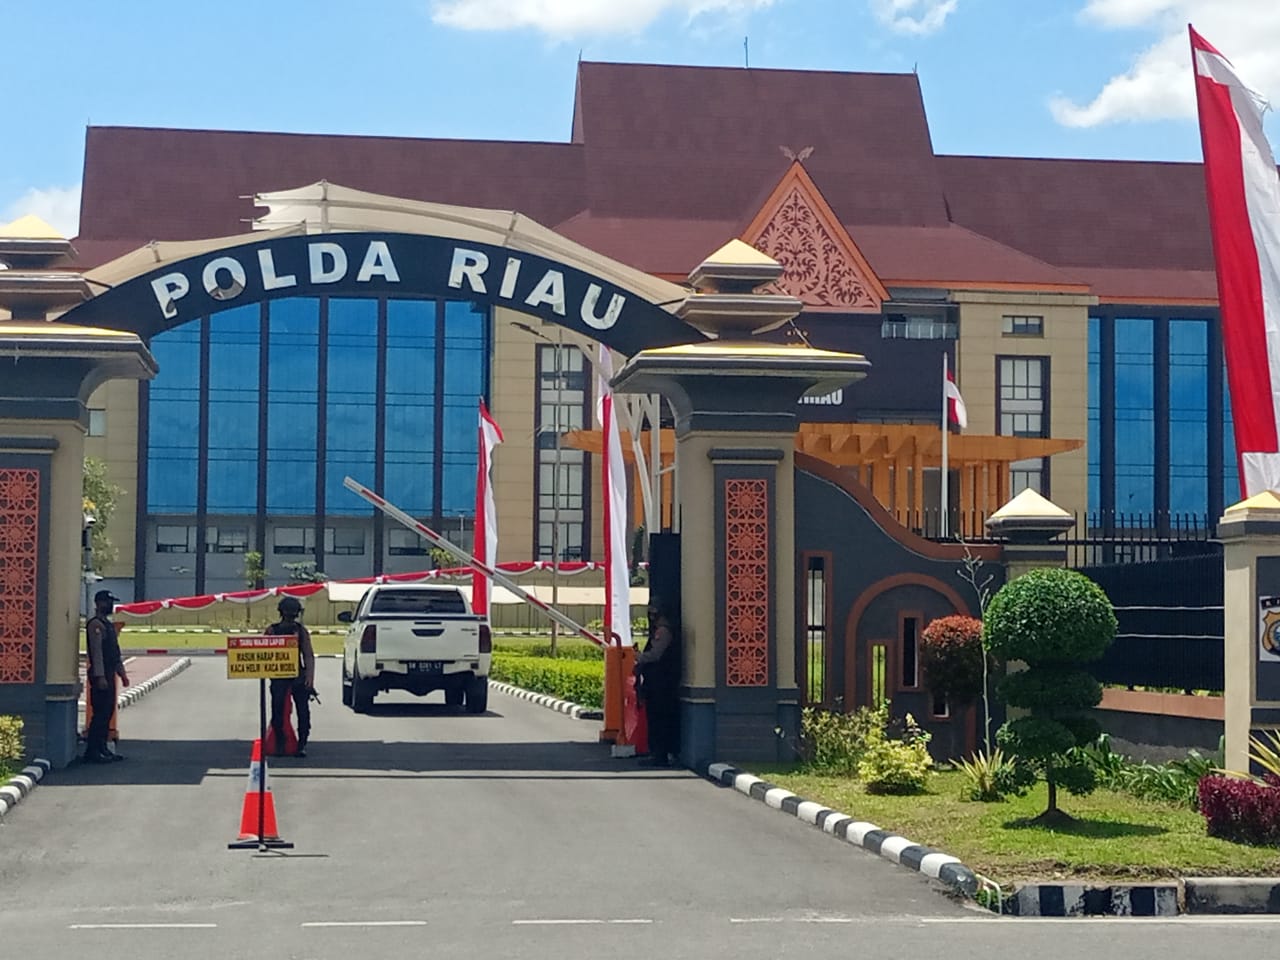 Kapolda dan Polda Riau Peringkat Pertama Indeks Penilaian Performa di Media dan Media Sosial